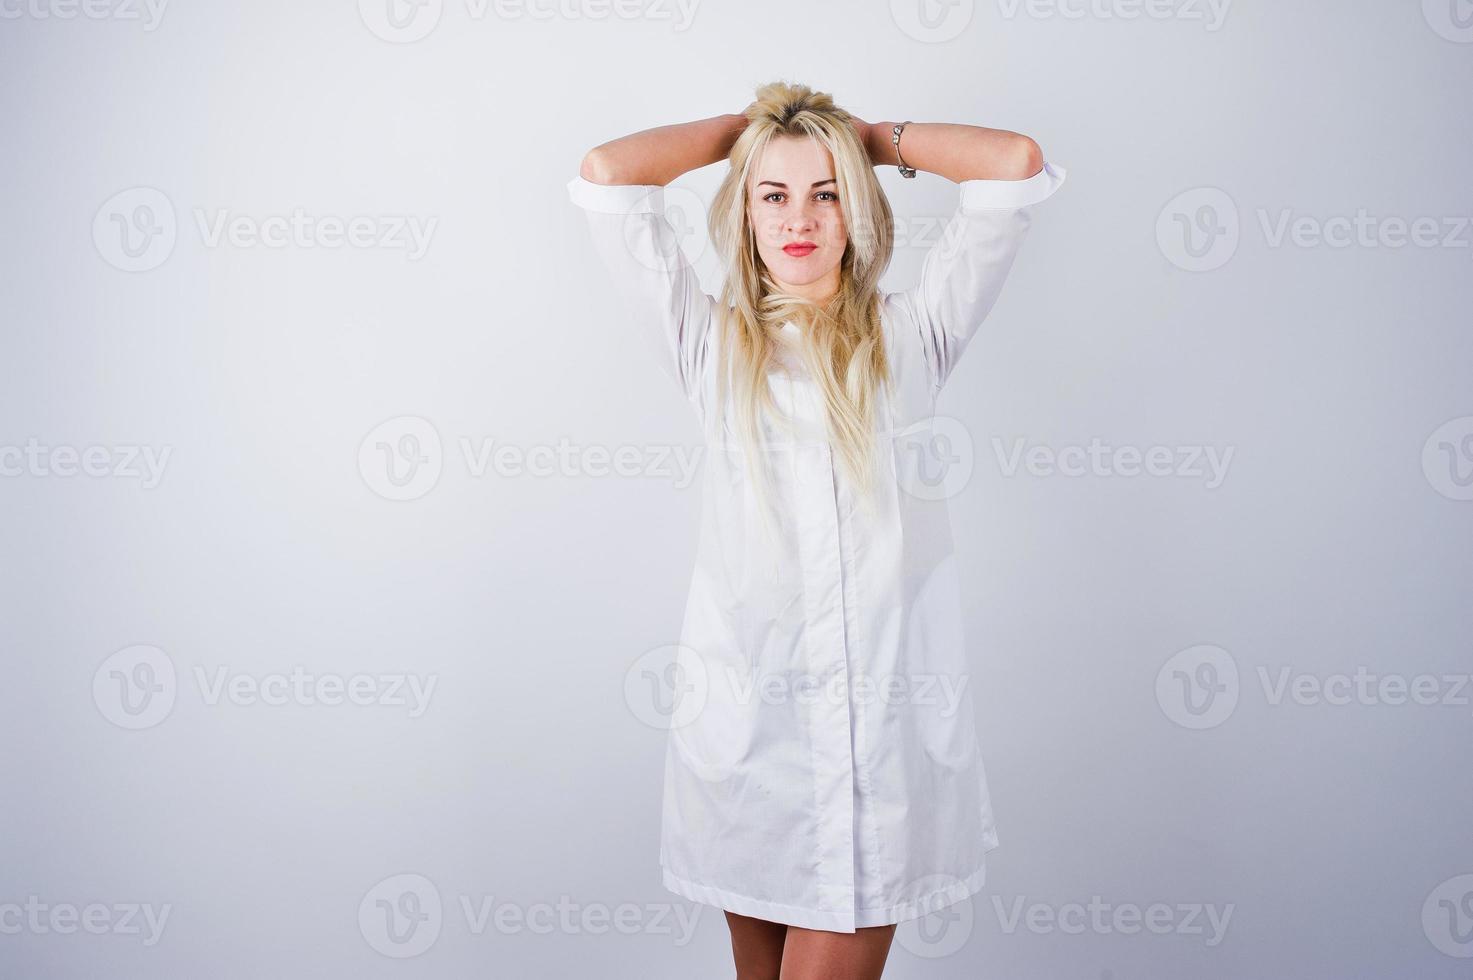 aantrekkelijke blonde vrouwelijke arts of verpleegkundige in laboratoriumjas geïsoleerd op een witte achtergrond. foto